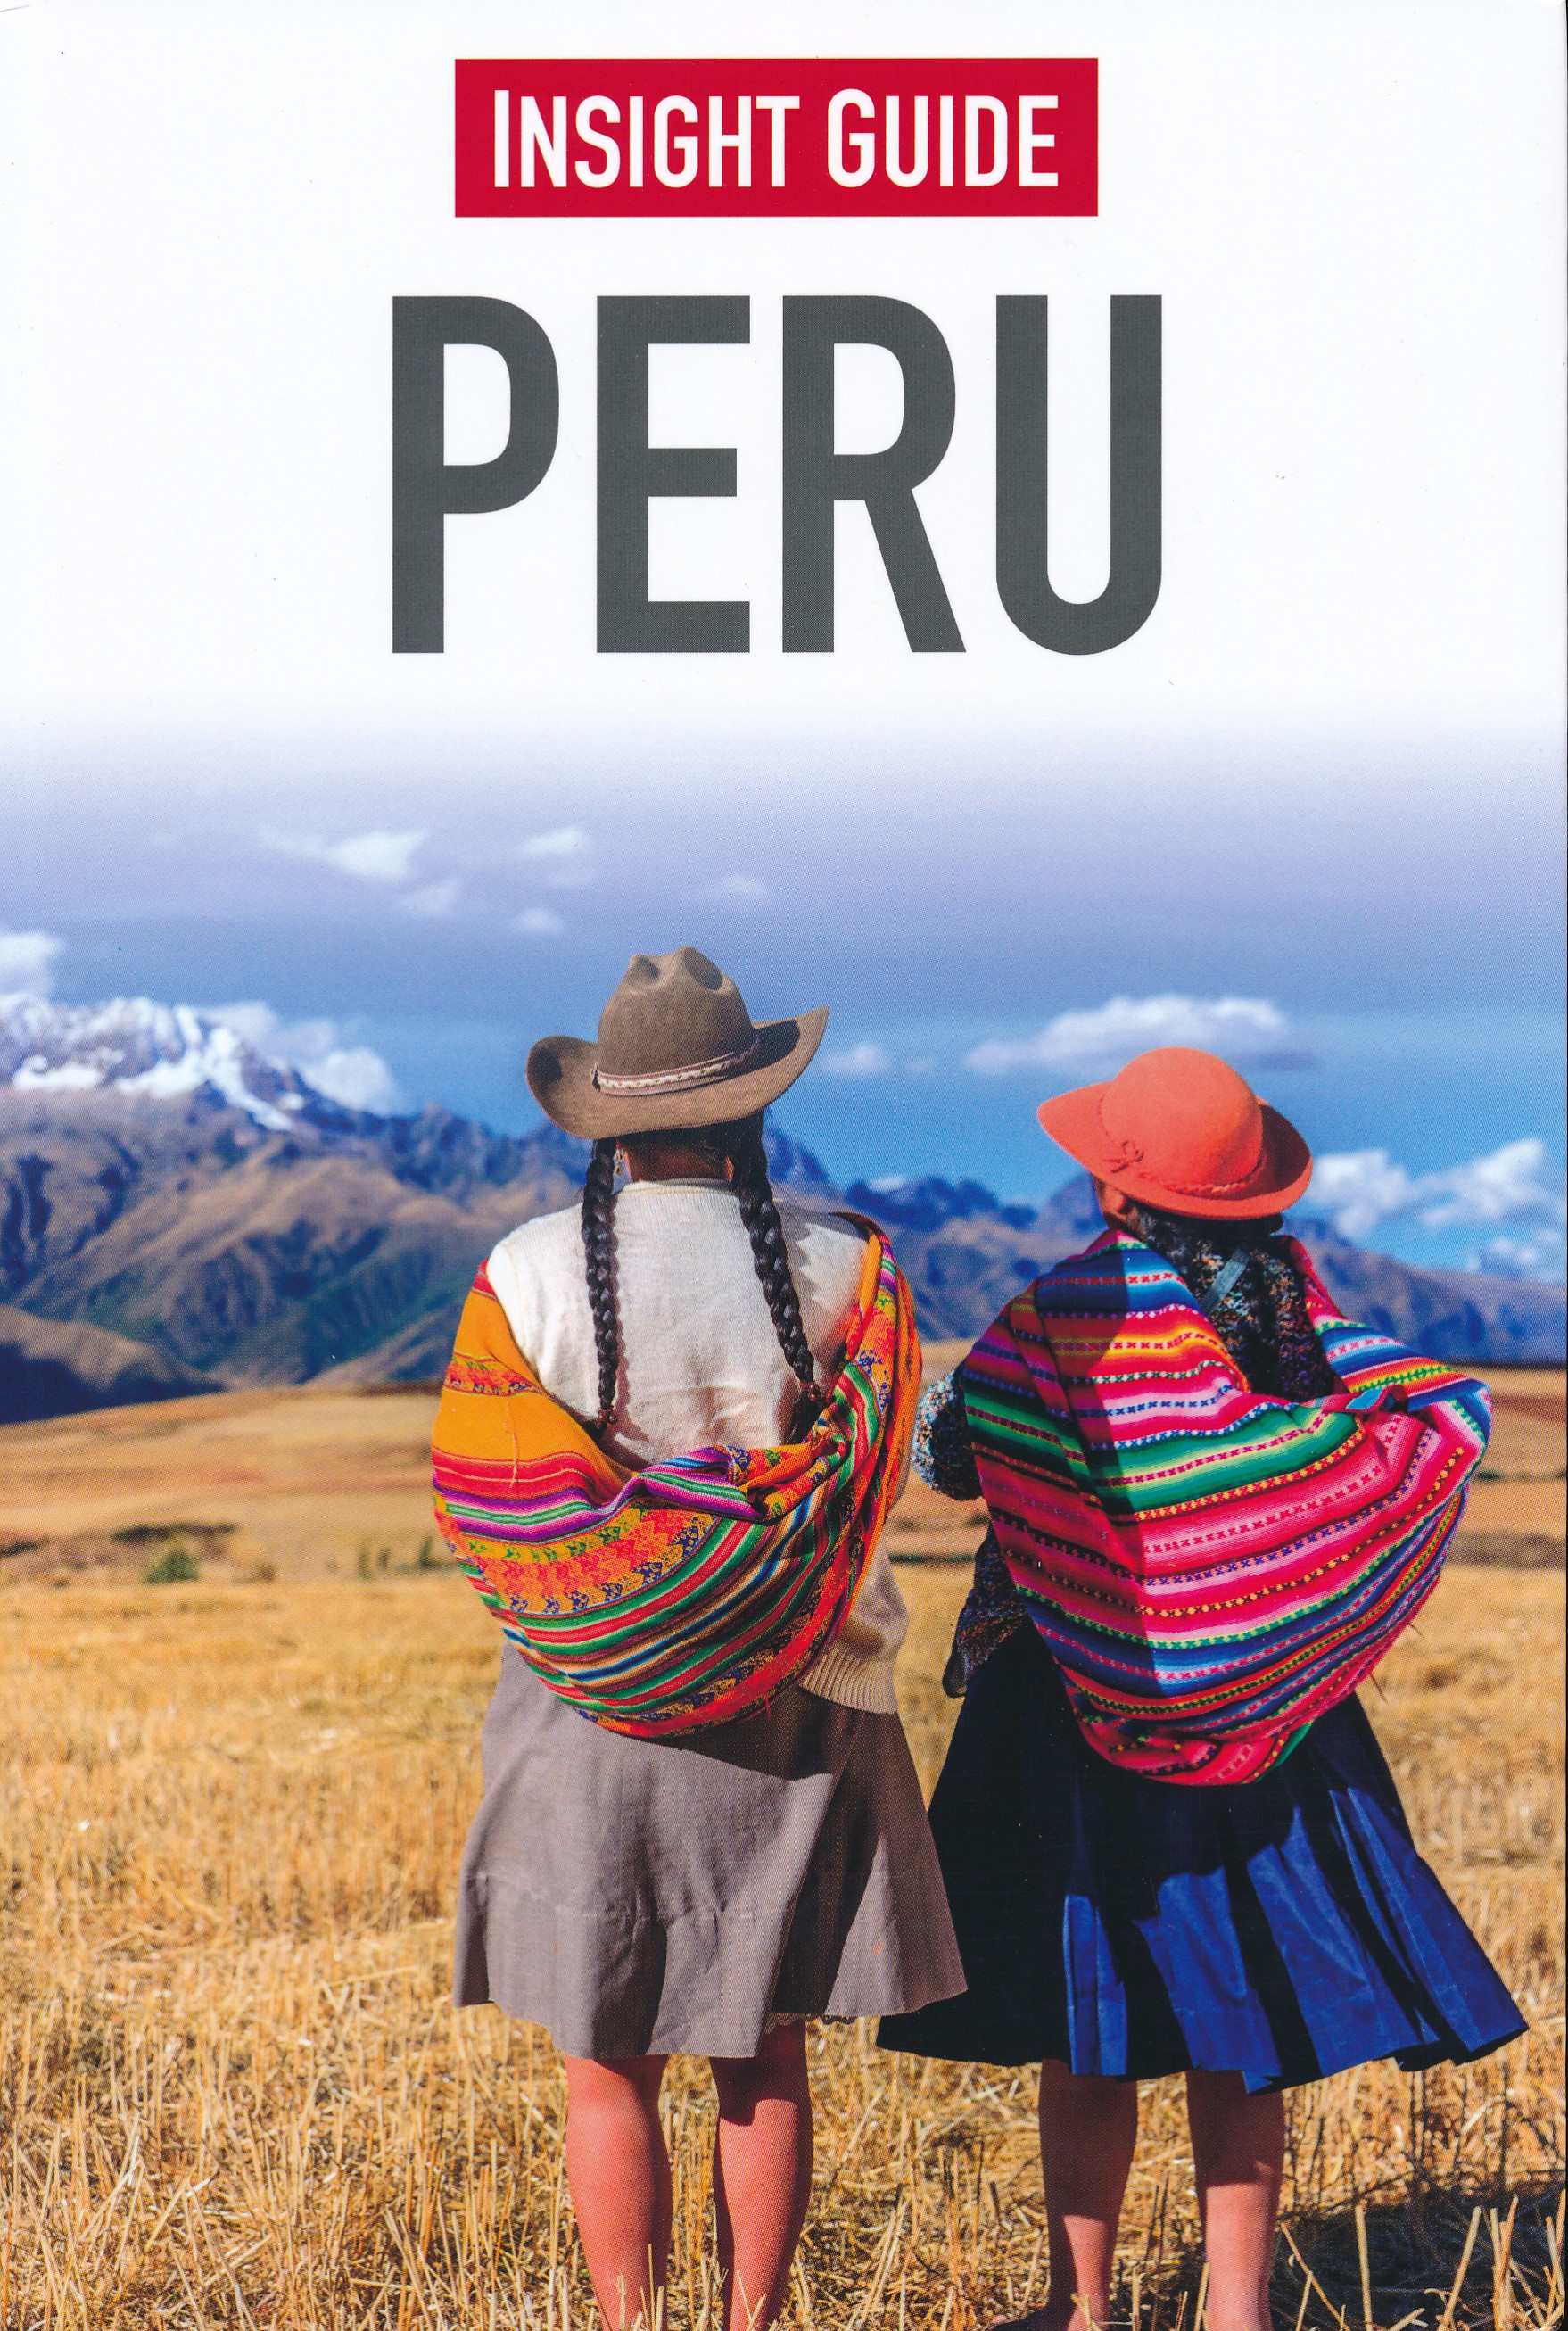 Online bestellen: Reisgids Insight Guide Peru | Uitgeverij Cambium